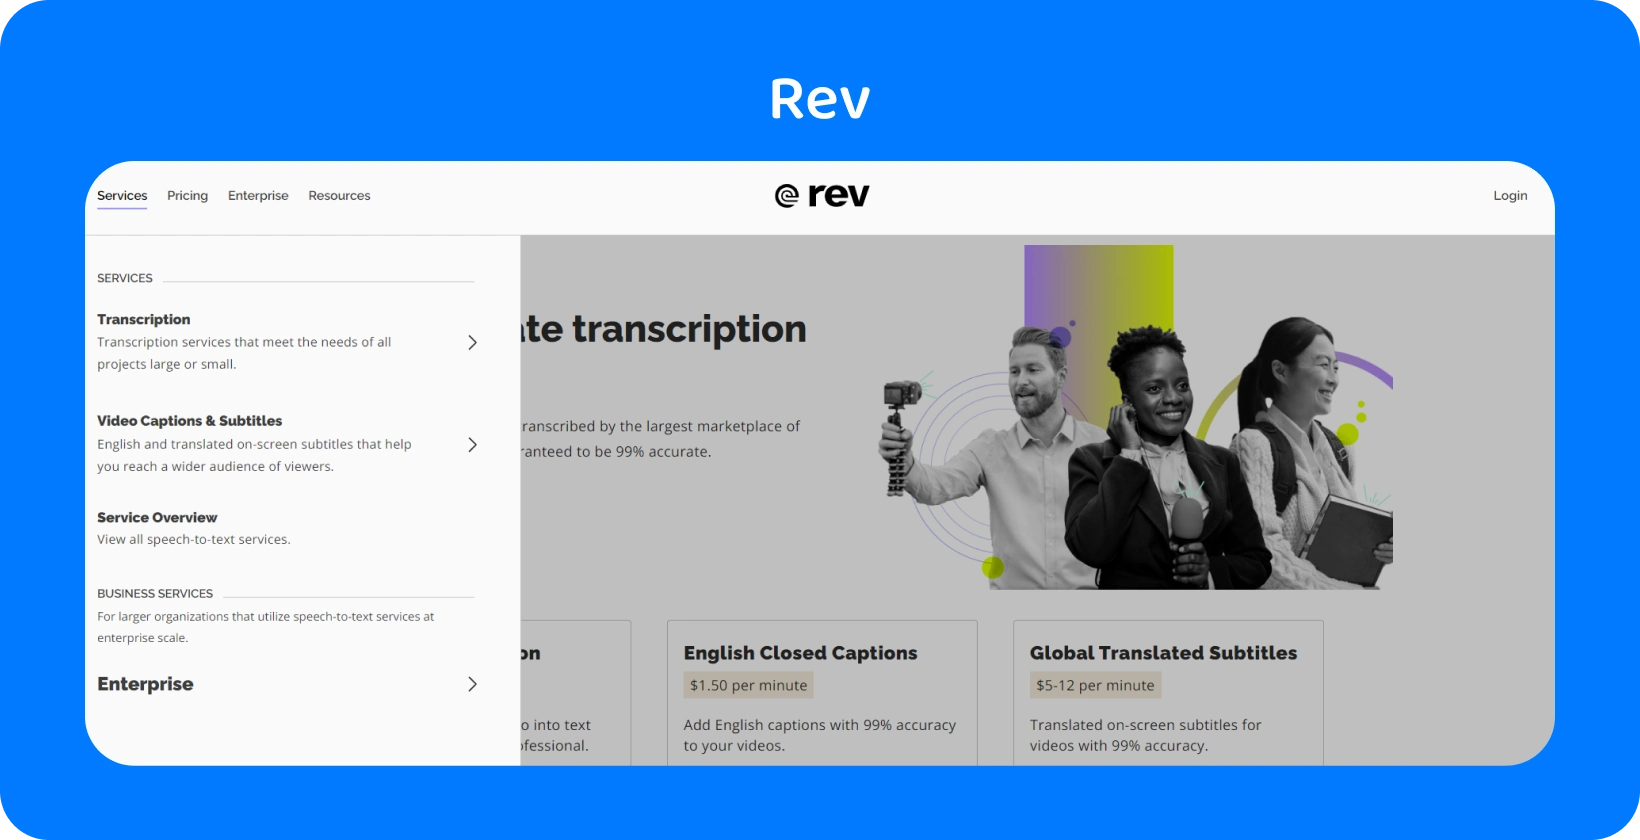 Pagina principală a Rev prezintă servicii de transcriere pentru conversia rapidă și precisă a sunetului în text pentru profesioniști.